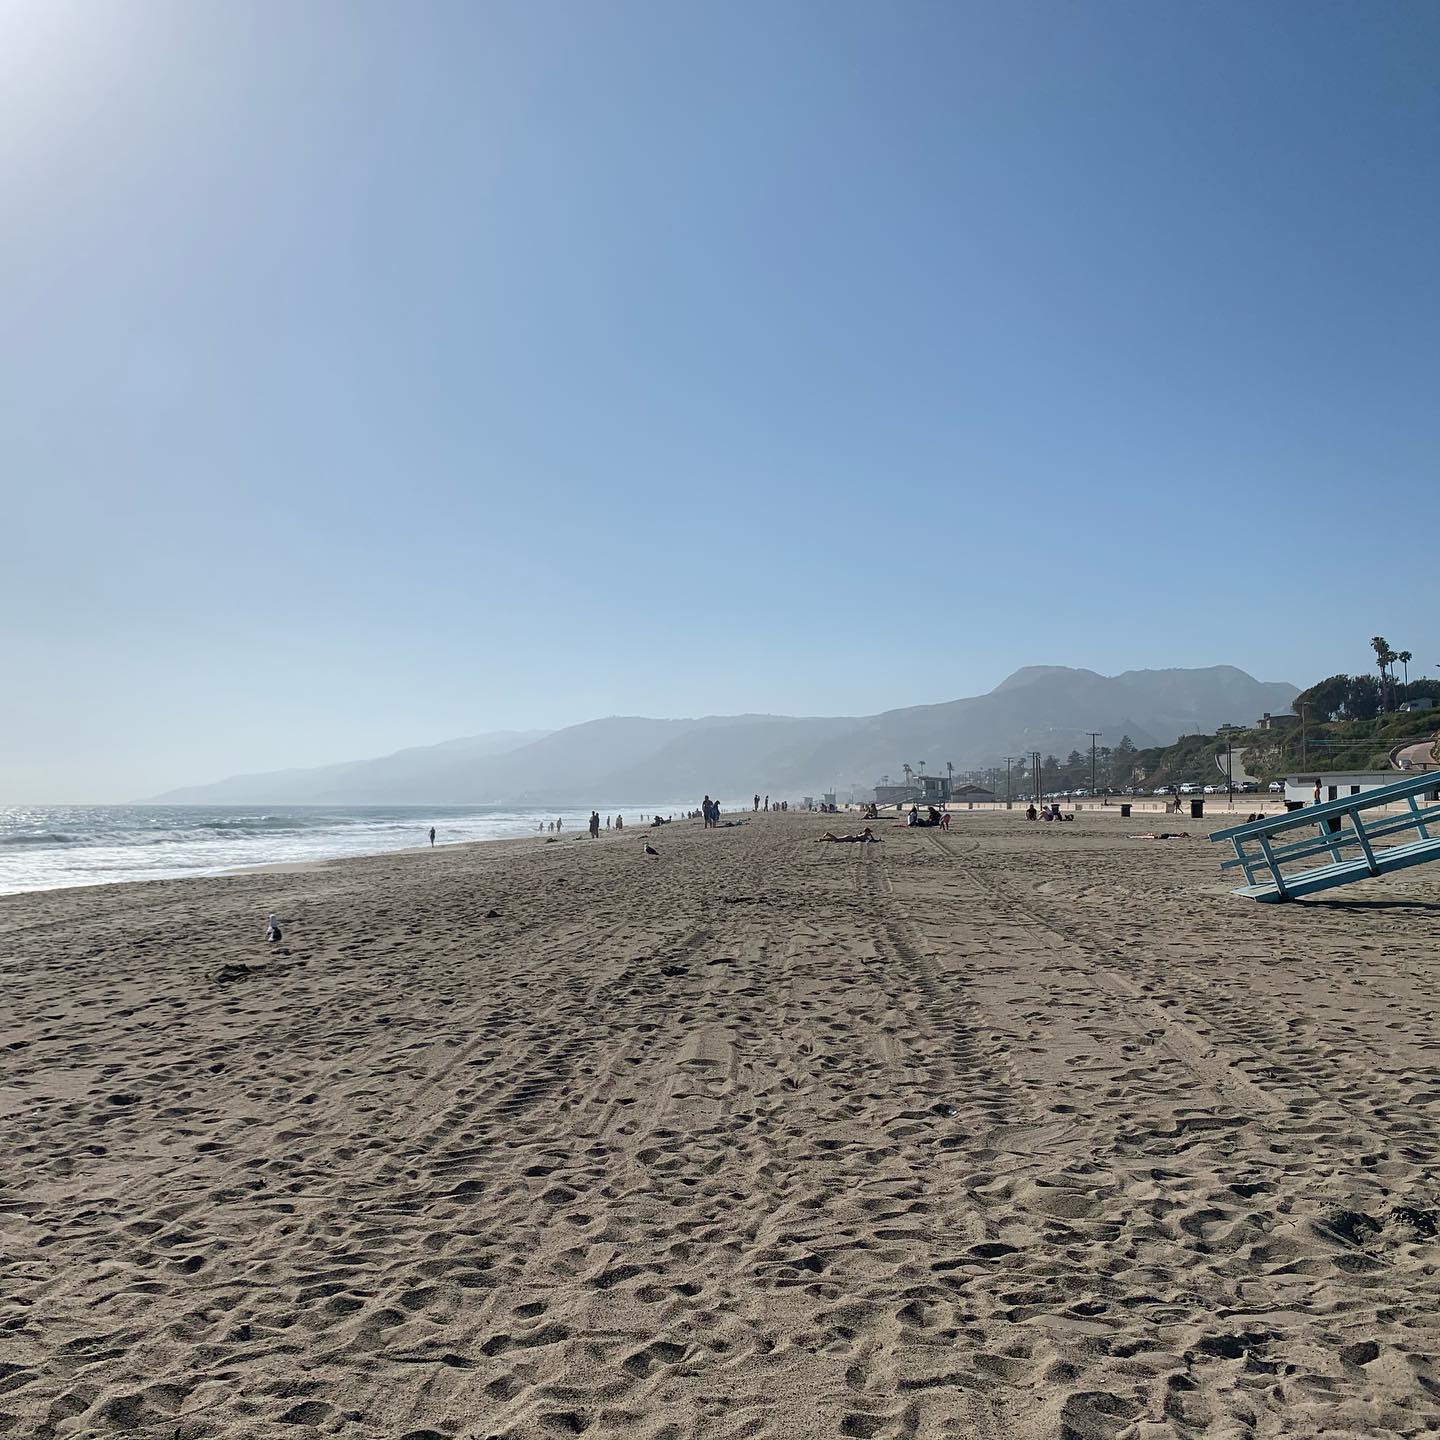 Trip to California during COVID-19. Malibu Beach, CA 3